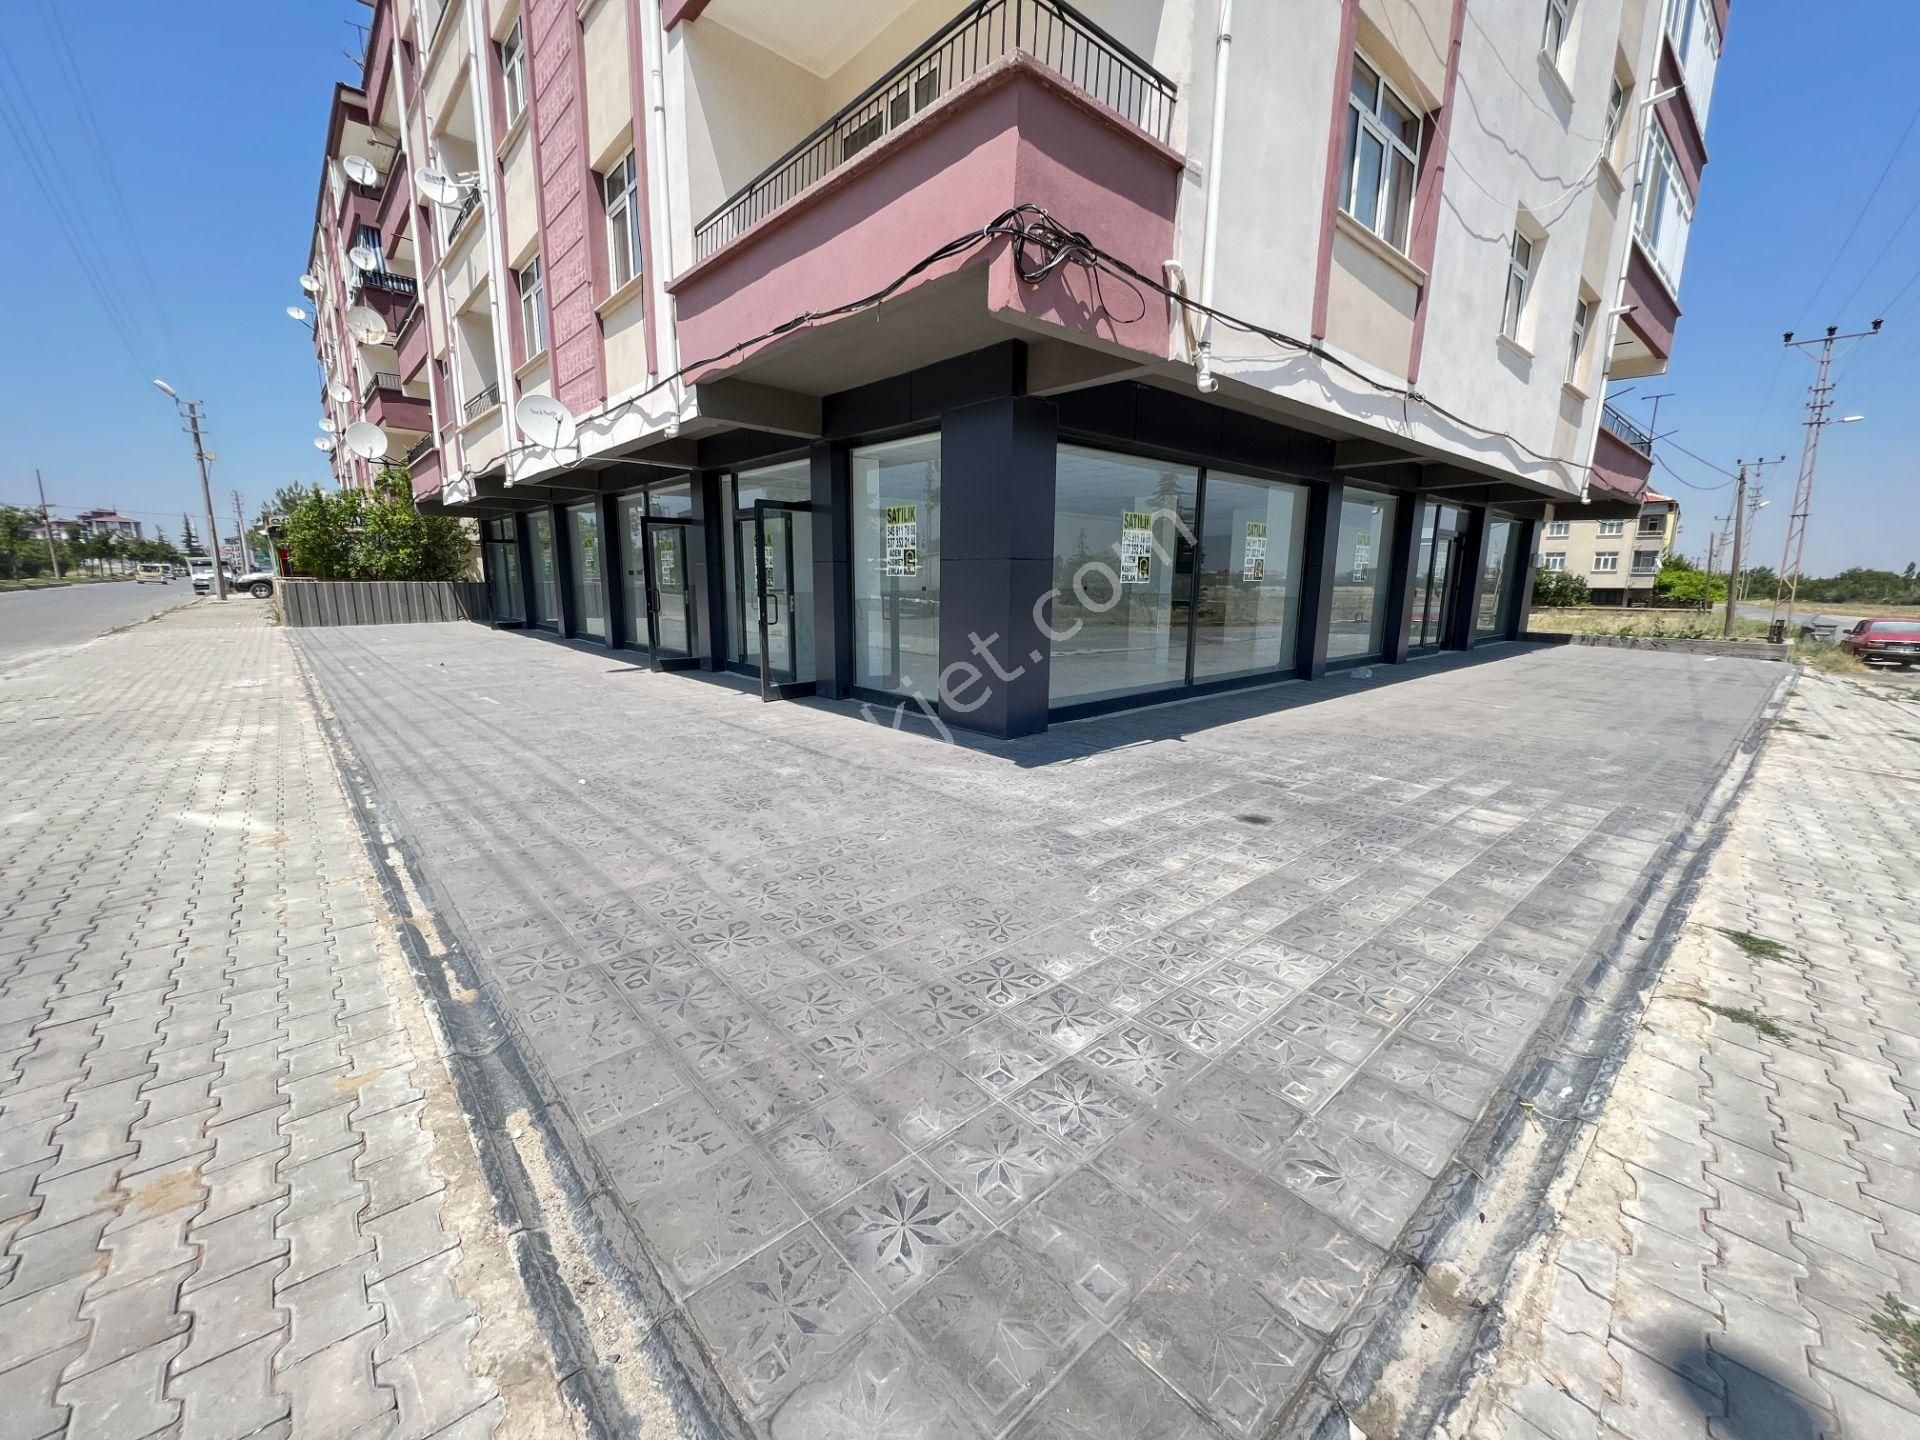 Akşehir Seyran Satılık Dükkan & Mağaza  A-K EMLAKTAN SEYRAN MAH ÇİFT VE CADDE CEPHE 90 M2 LÜX SATILIK DÜKKAN